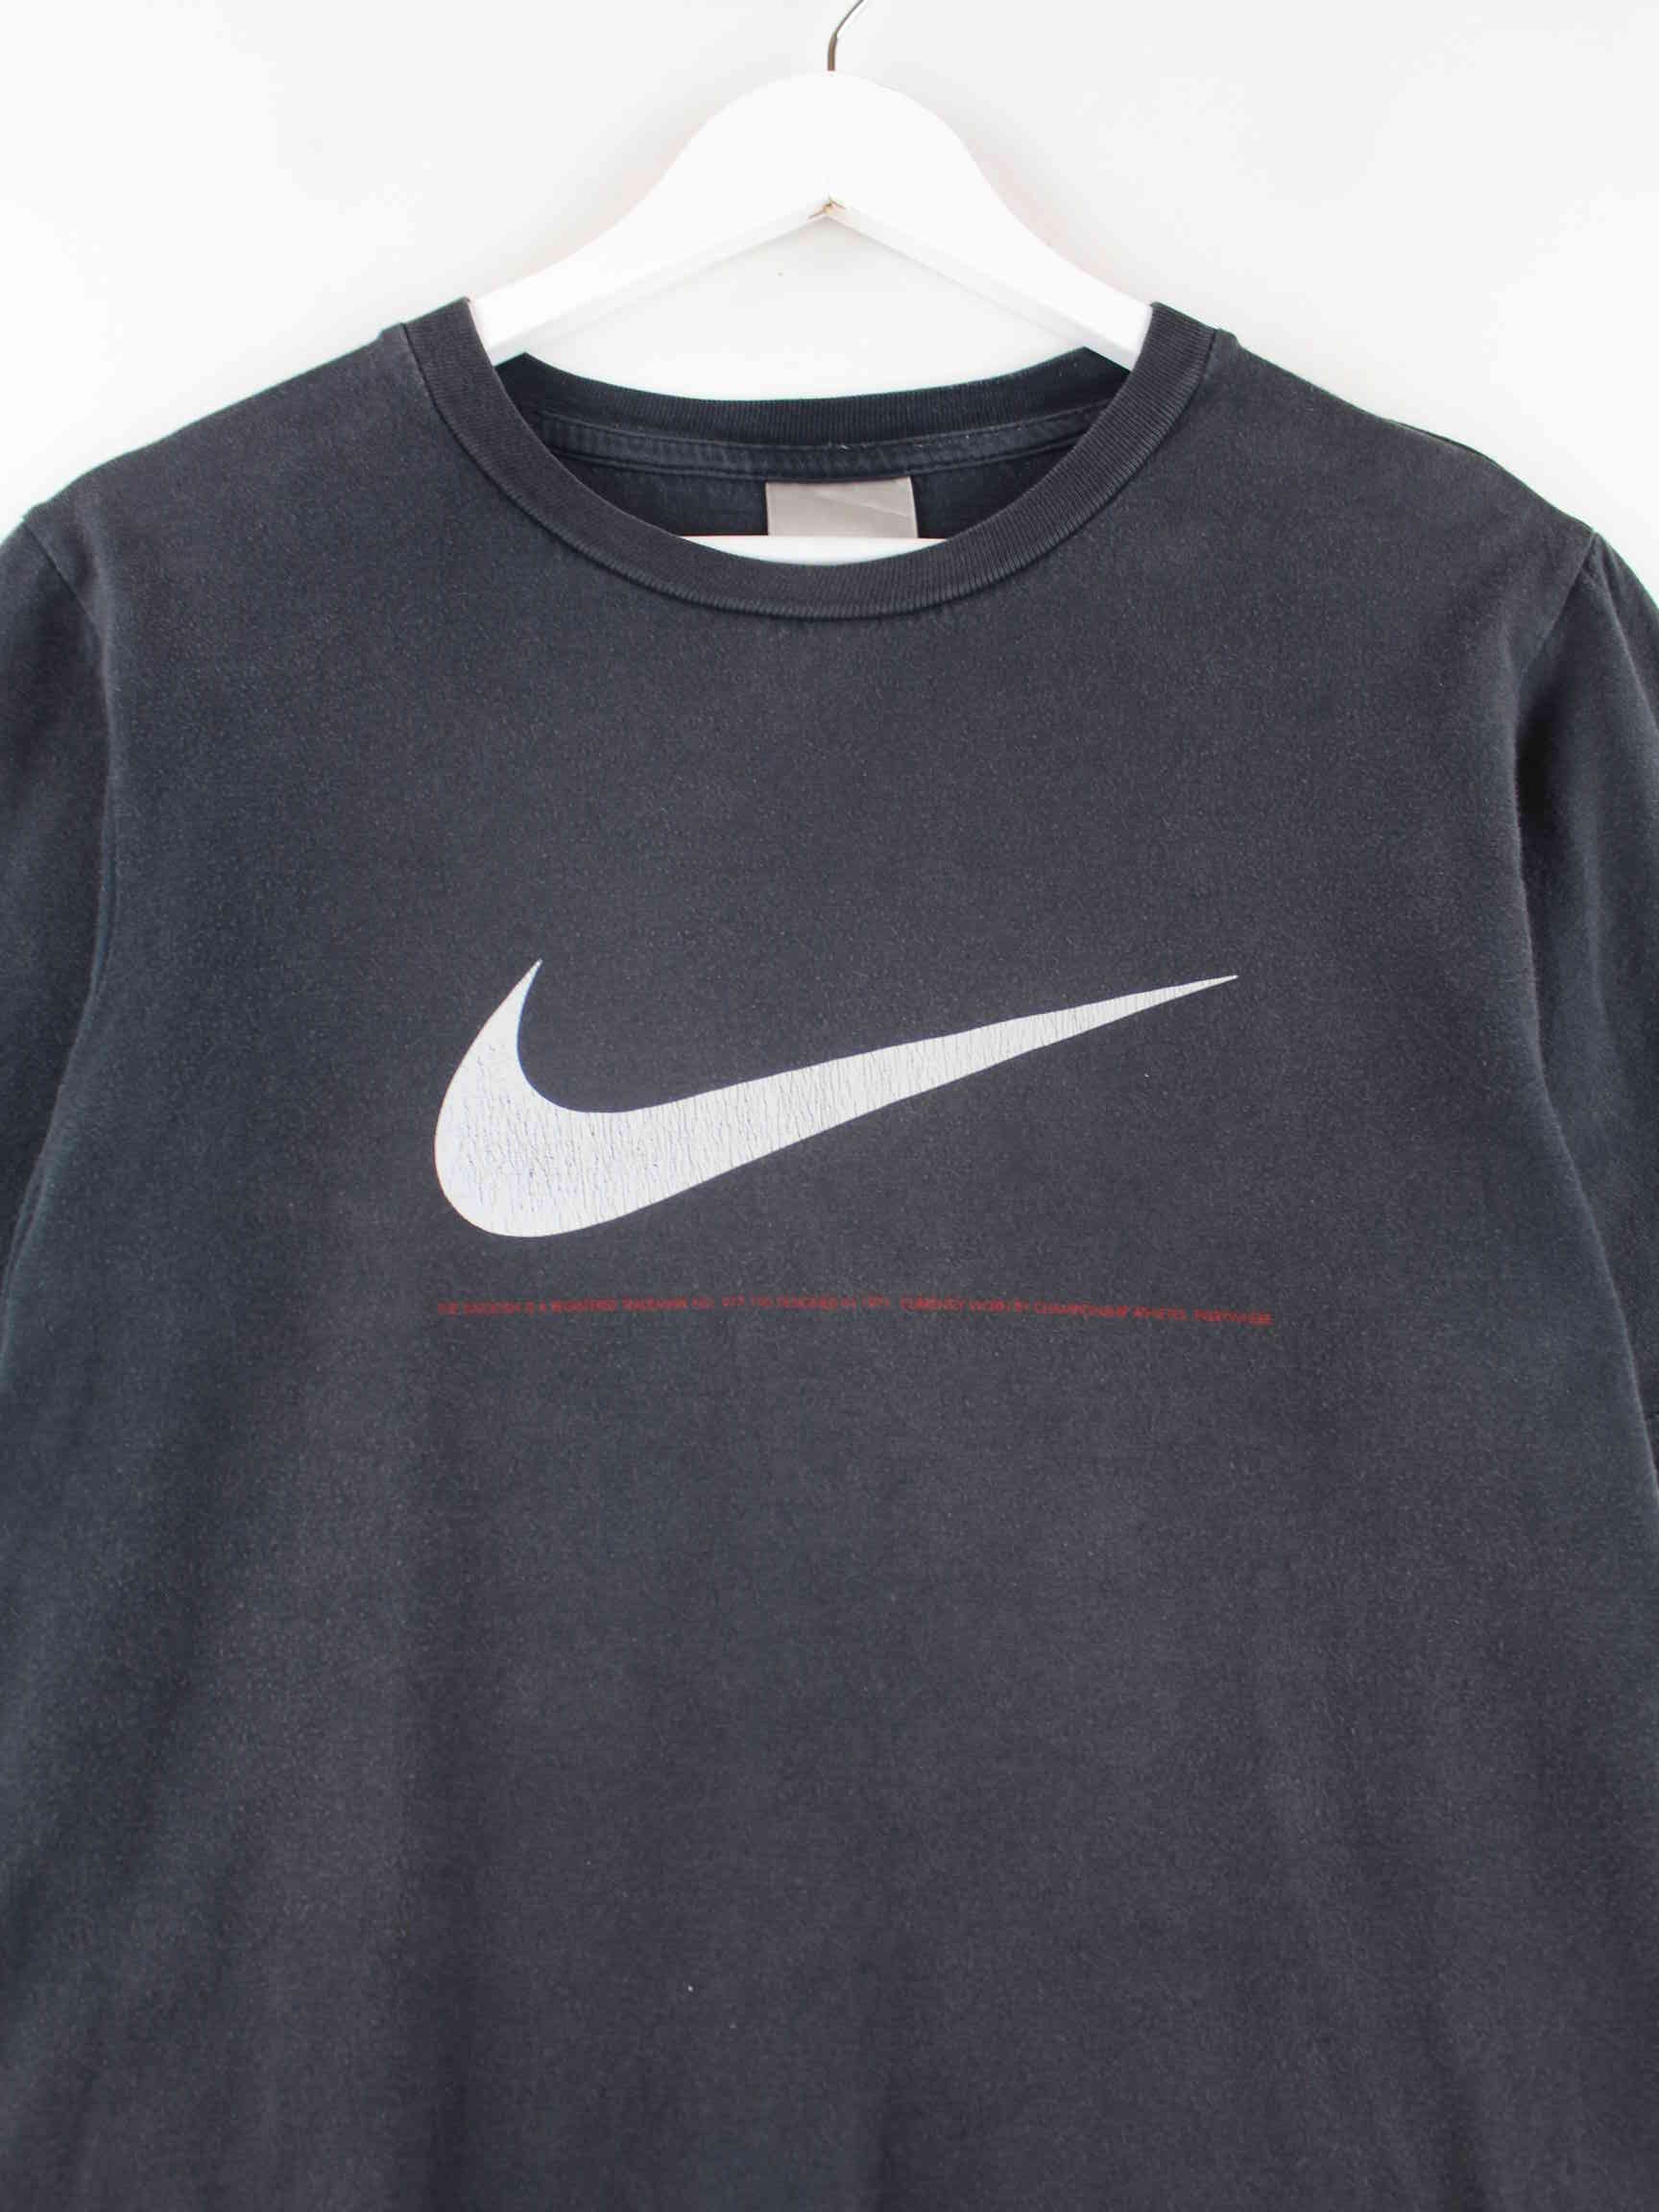 Nike 90s Vintage Big Swoosh Print T-Shirt Grau S (detail image 1)